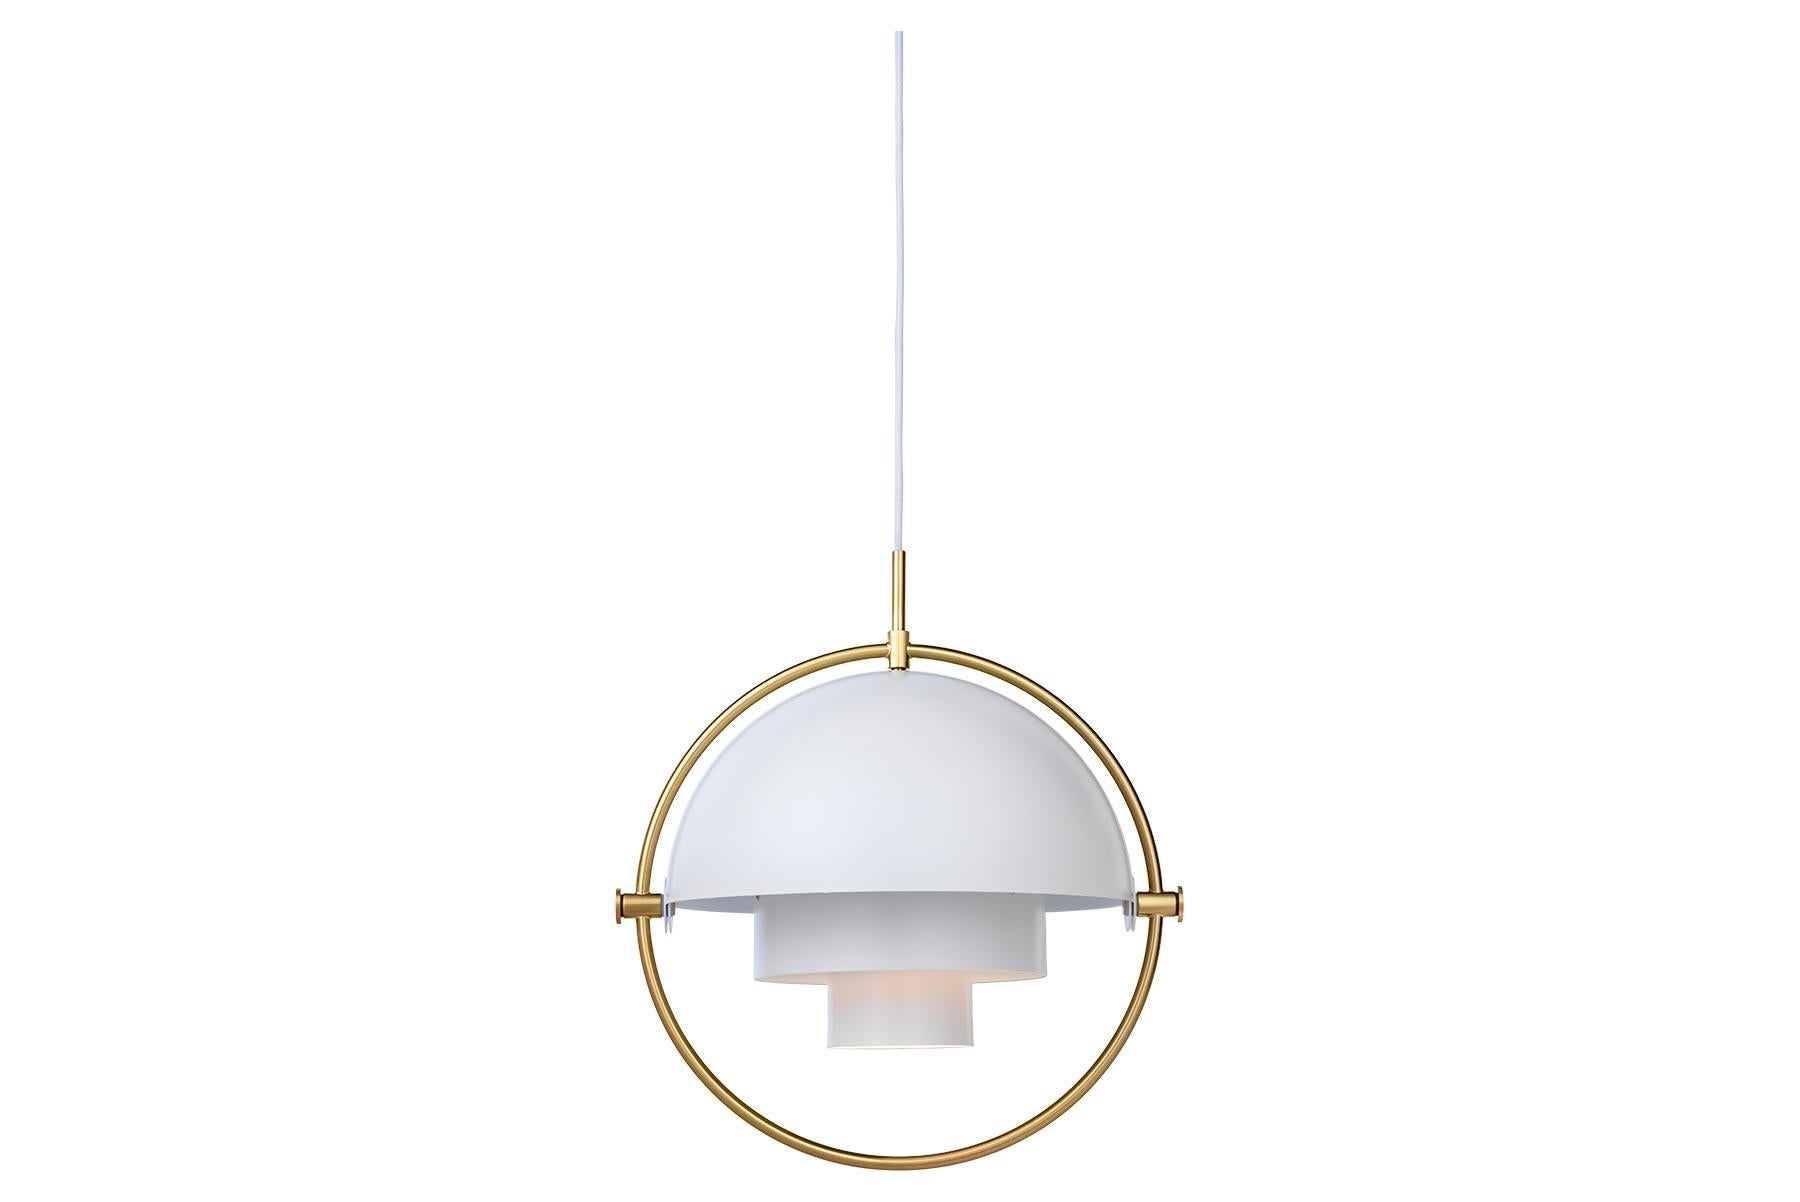 Die Multi-Lite Pendelleuchte erinnert an die goldene Ära des dänischen Designs mit ihrer charakteristischen Form zweier gegenüberliegender, beweglicher Schirme, die eine persönliche Installation und eine breite Palette von Beleuchtungswerten in